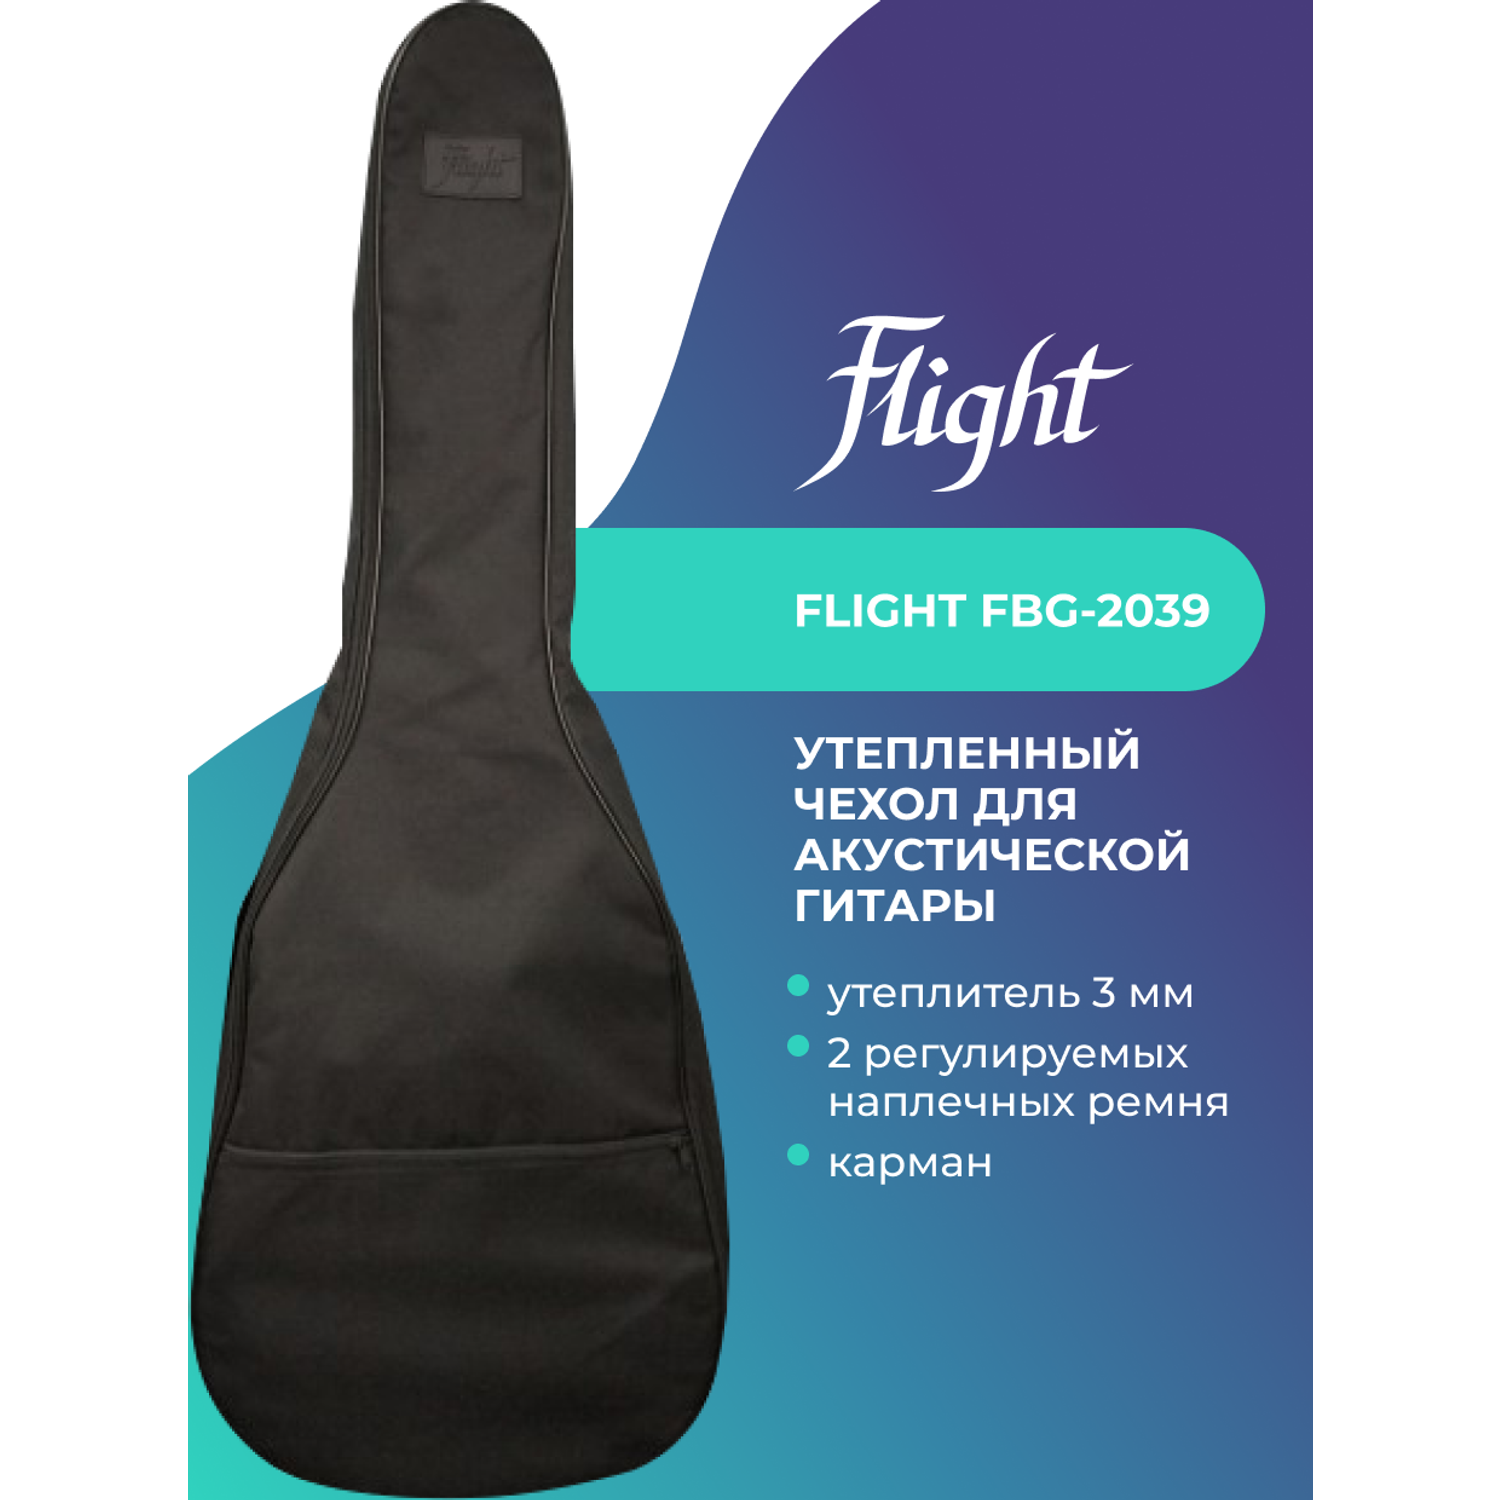 Чехол Flight FBG-N-2039 для акустической гитары утепленный 3 мм - фото 1